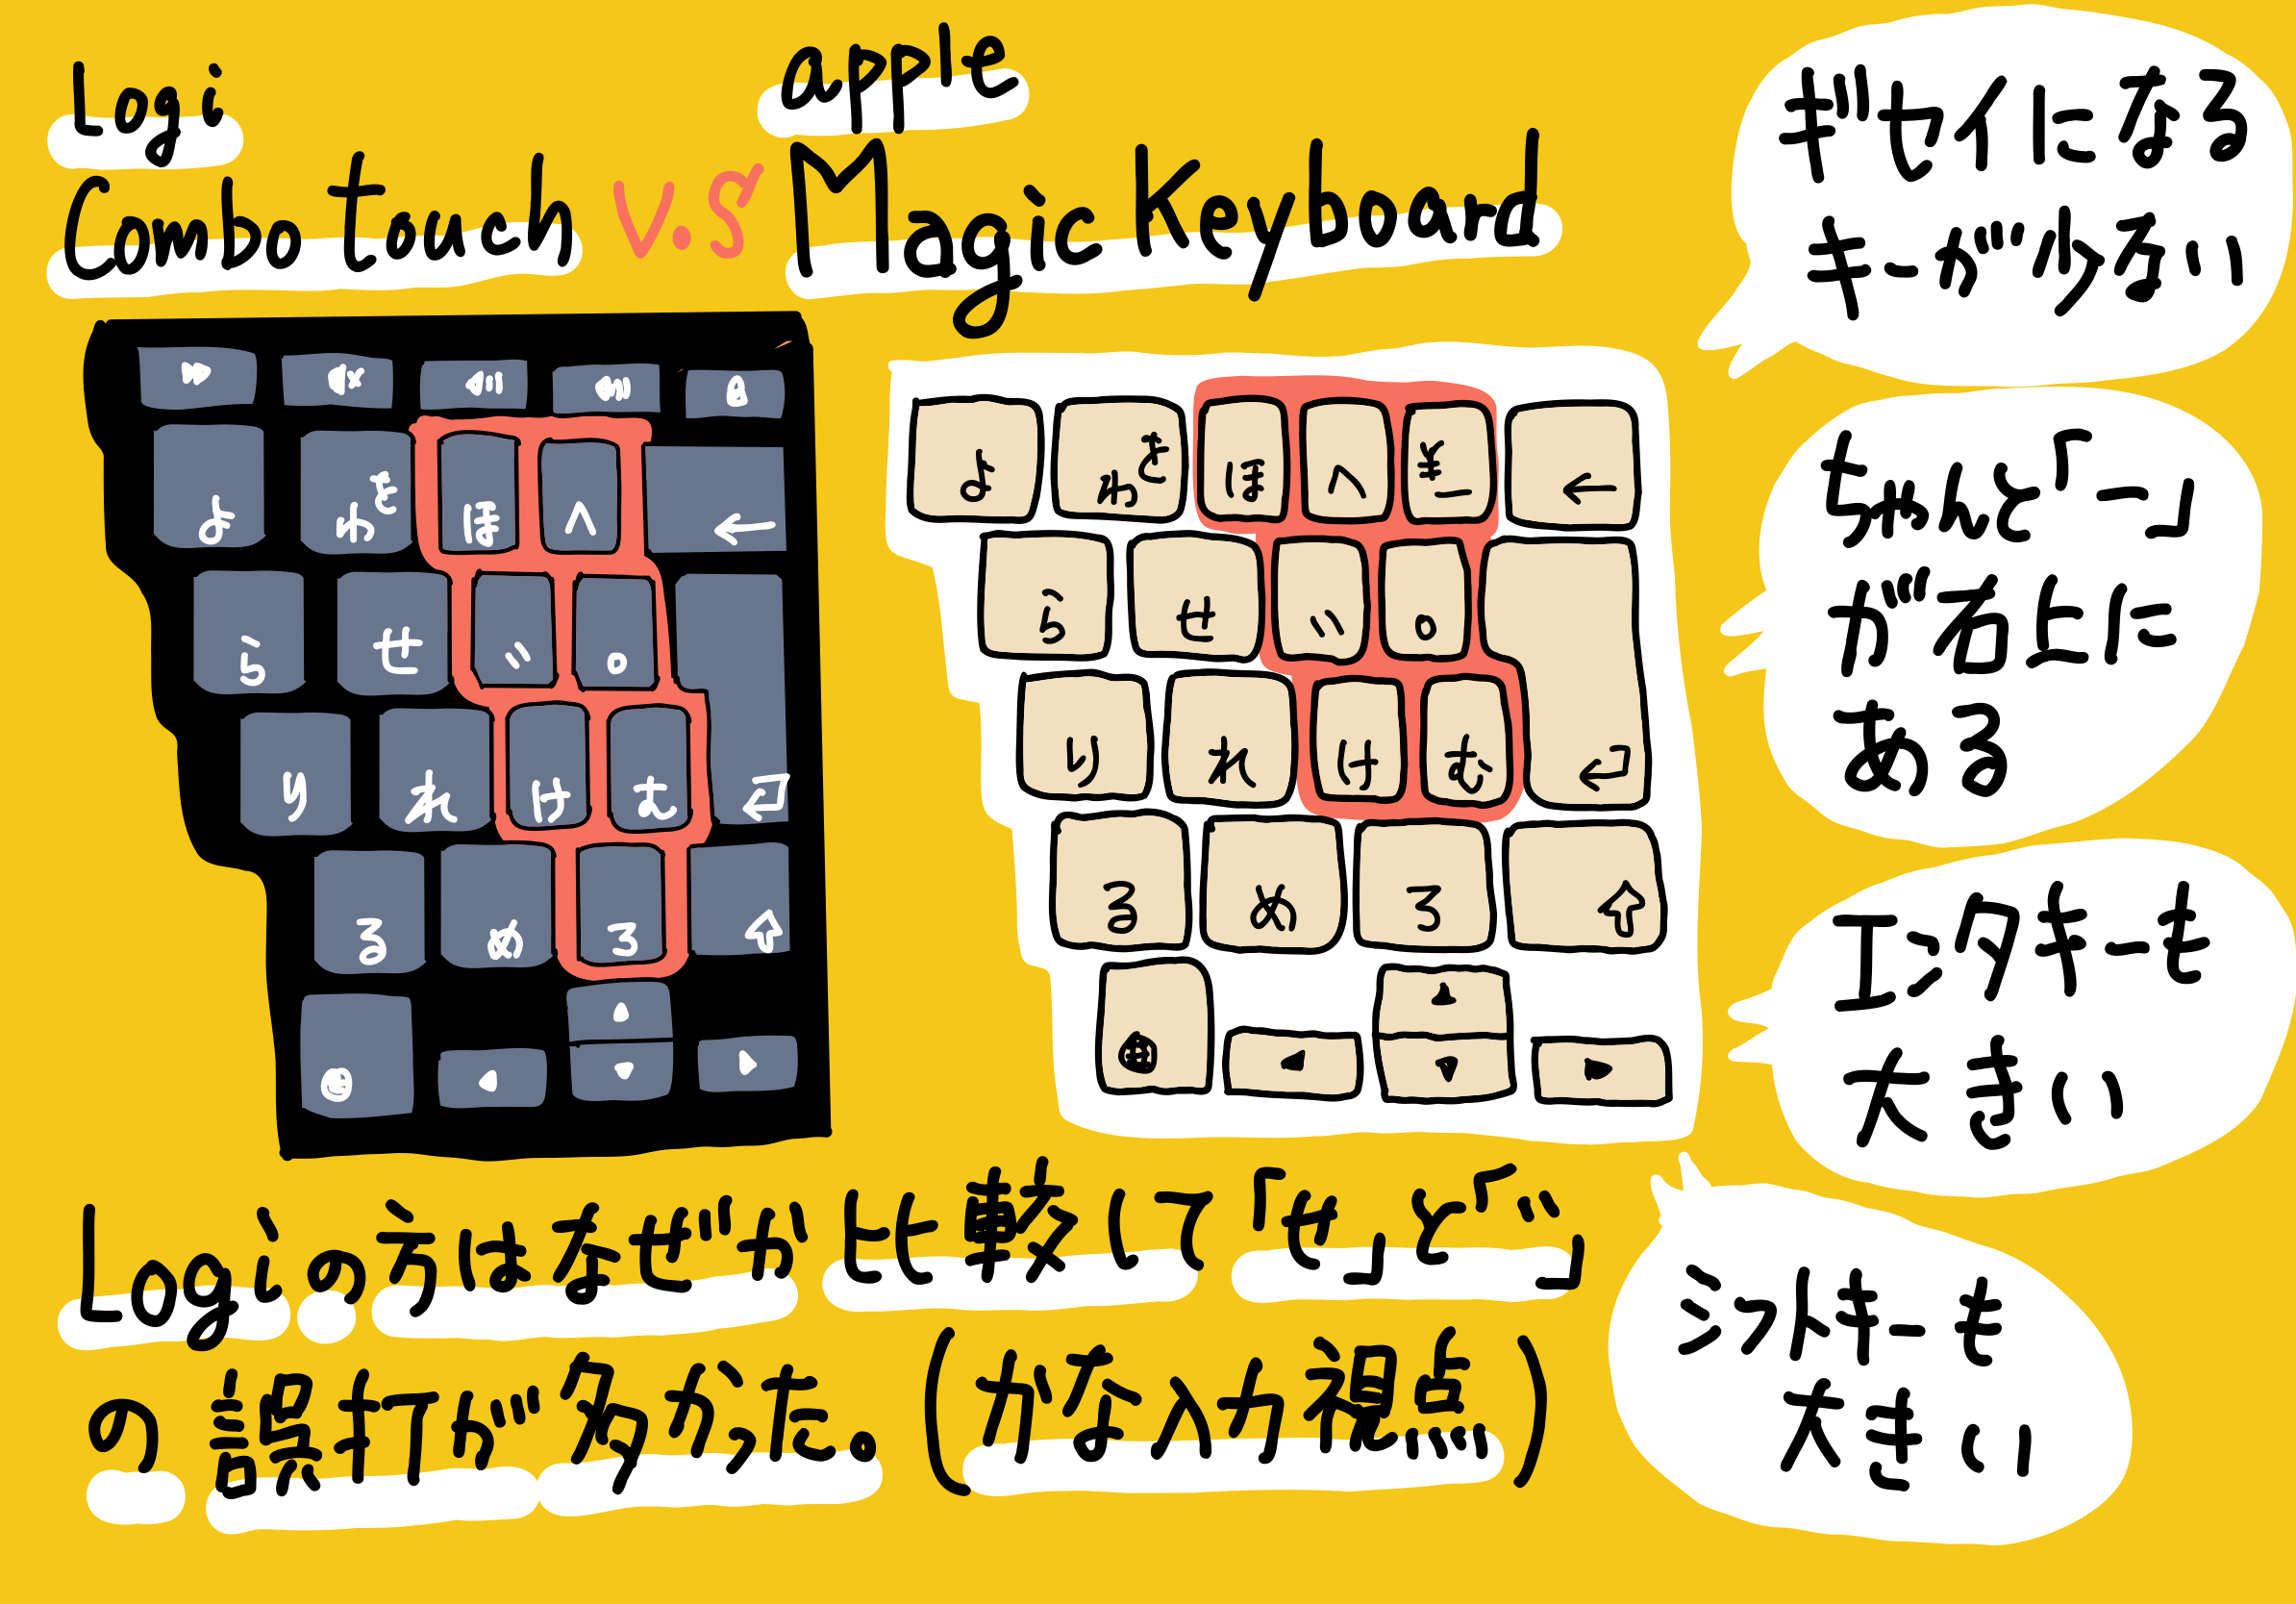 iPad 11インチ用 Magic Keyboard を Logicool Combo Touch と比べてみるレビュー。かな入力視点での加点があり、総合的には78点くらいのキーボードです。。